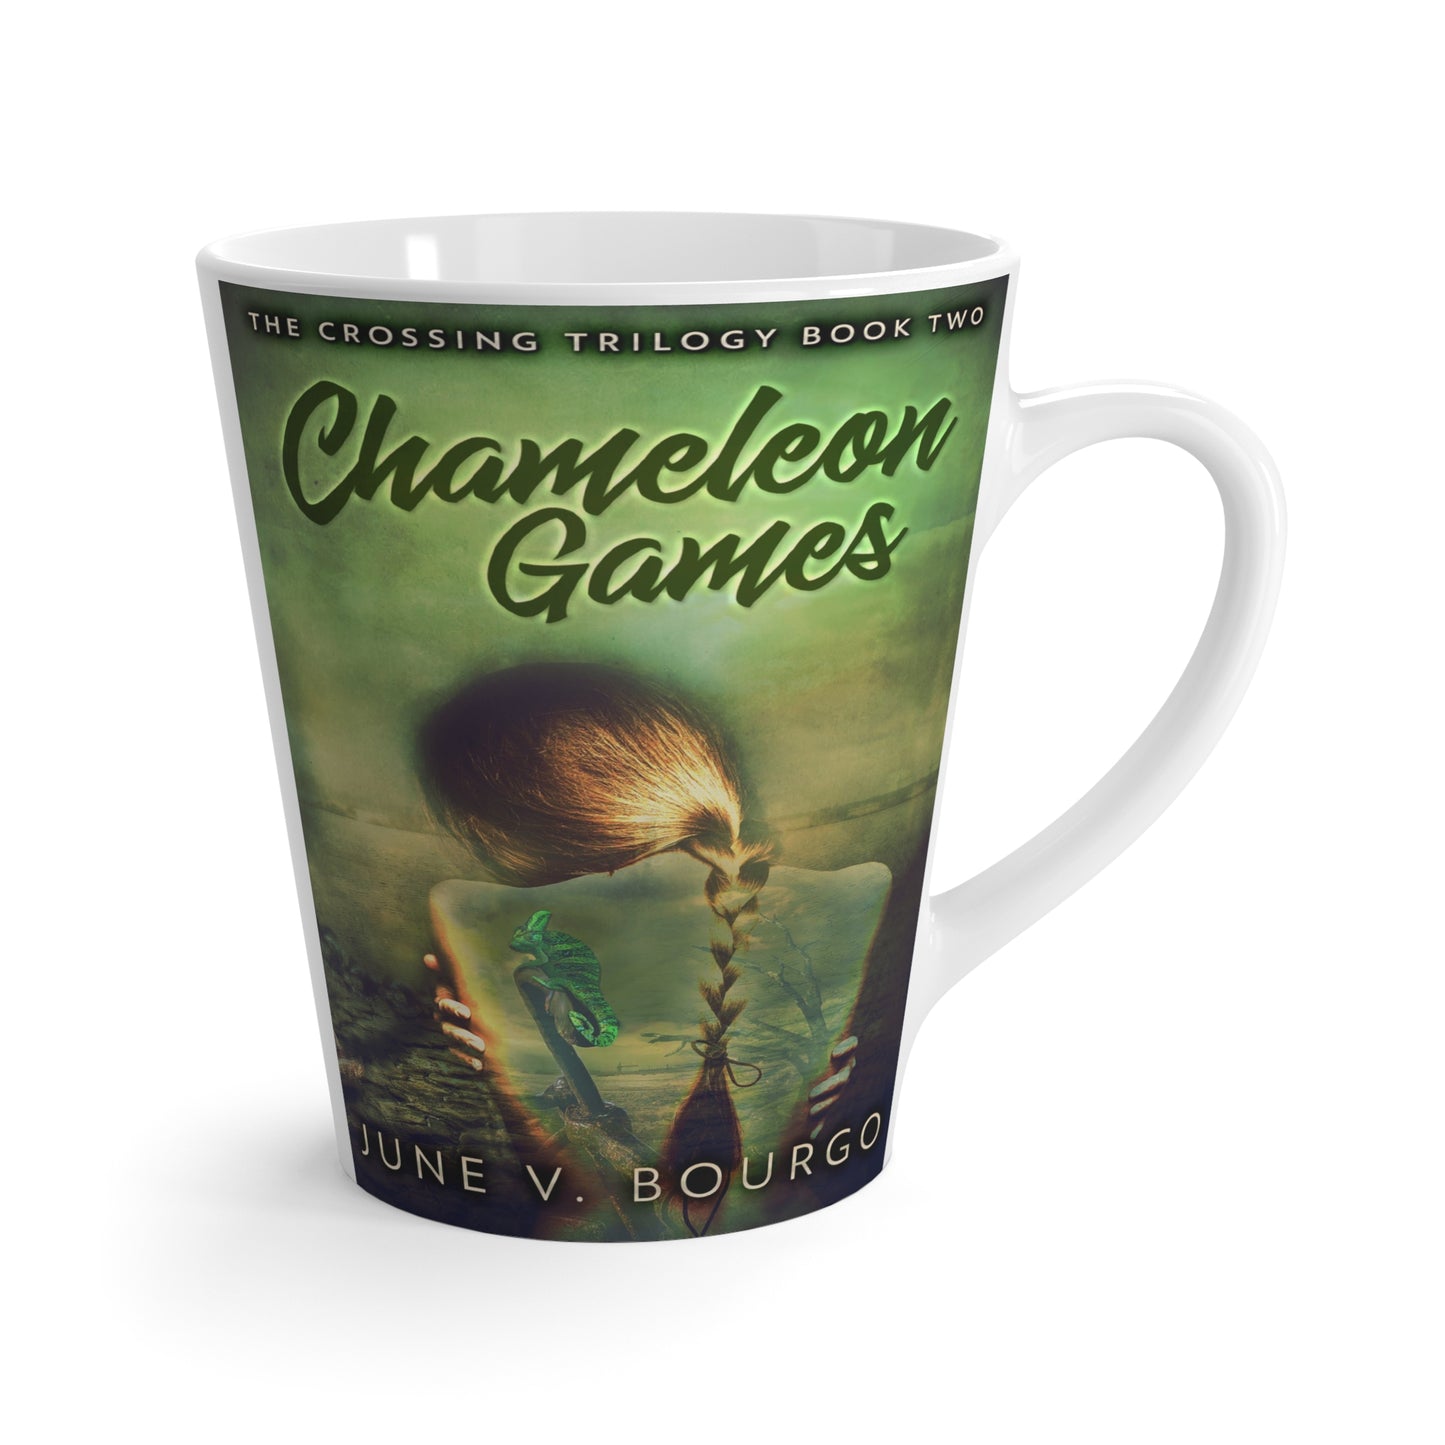 Chameleon Games - Latte Mug